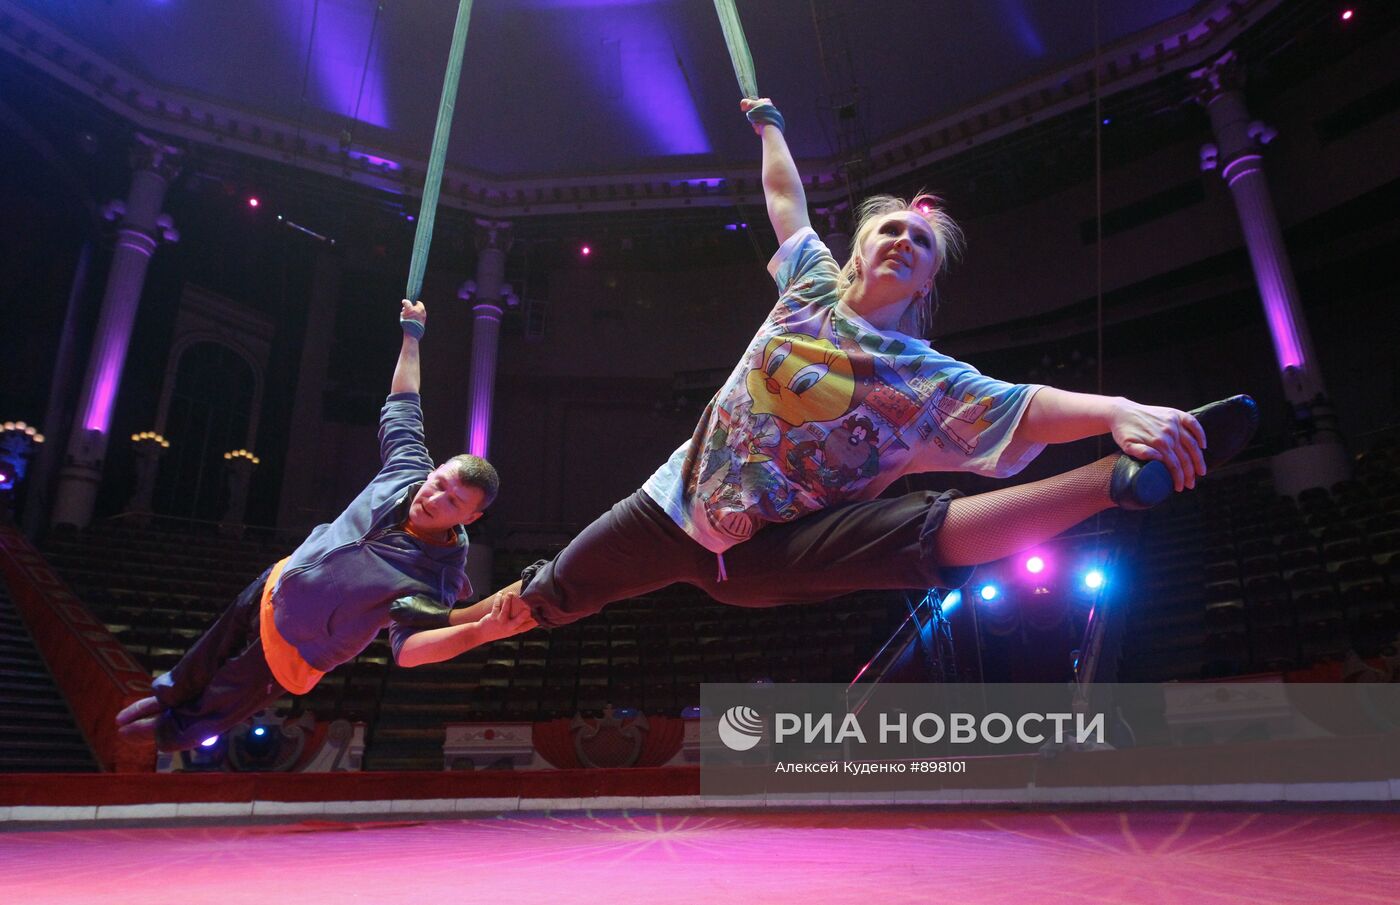 Воздушные гимнасты на полотнах Юлия и Александр Волковы